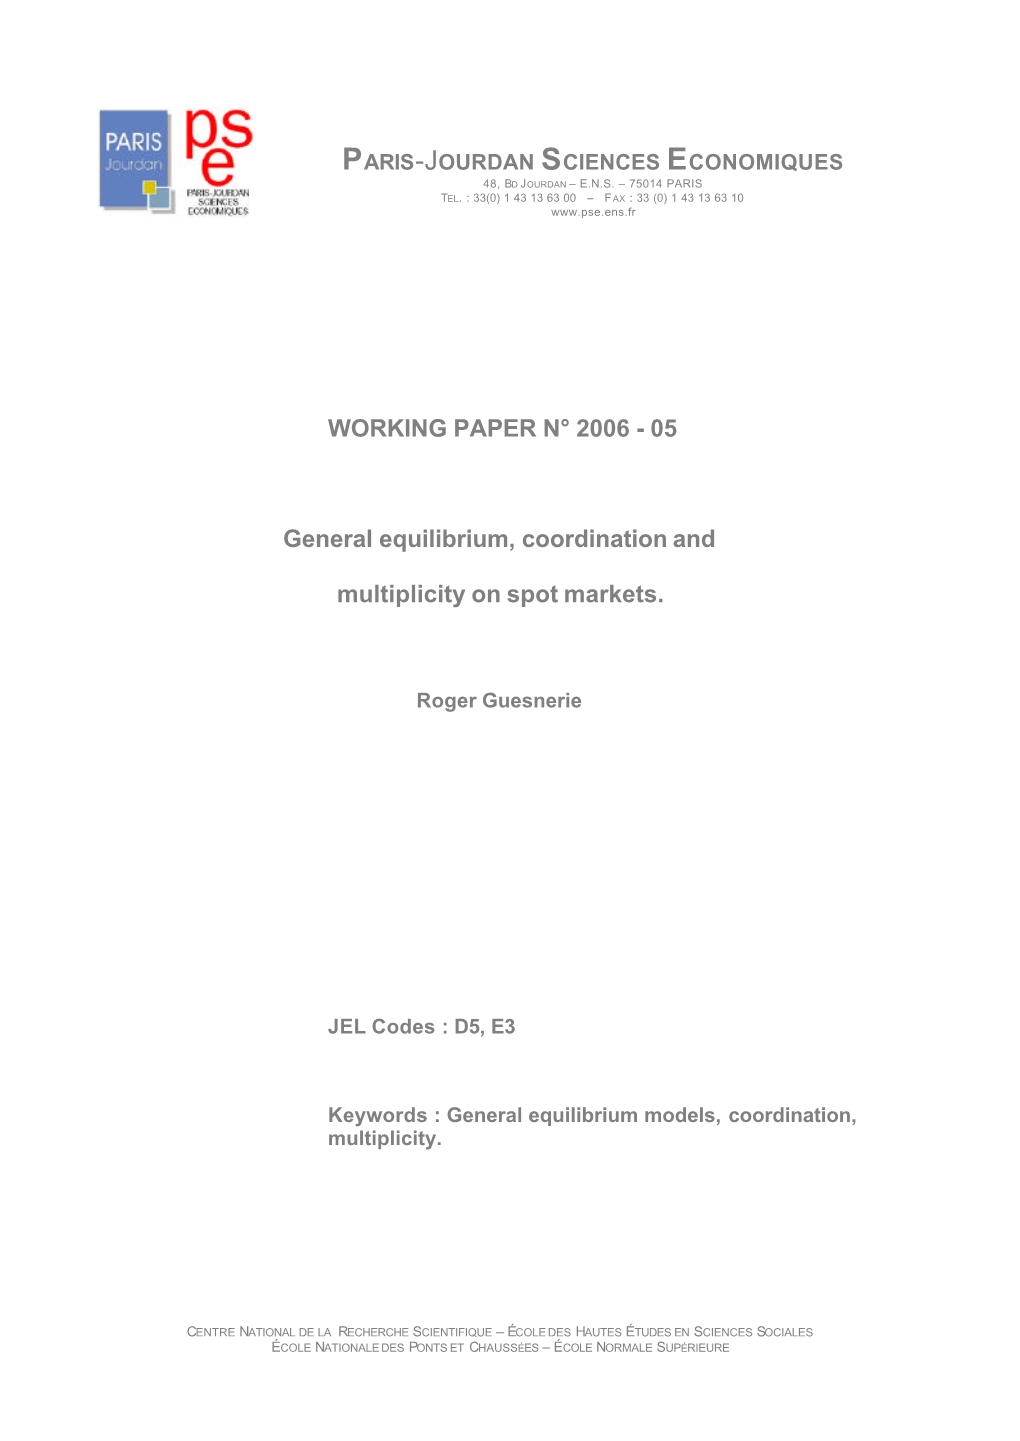 Working Paper N° 2006 - 05